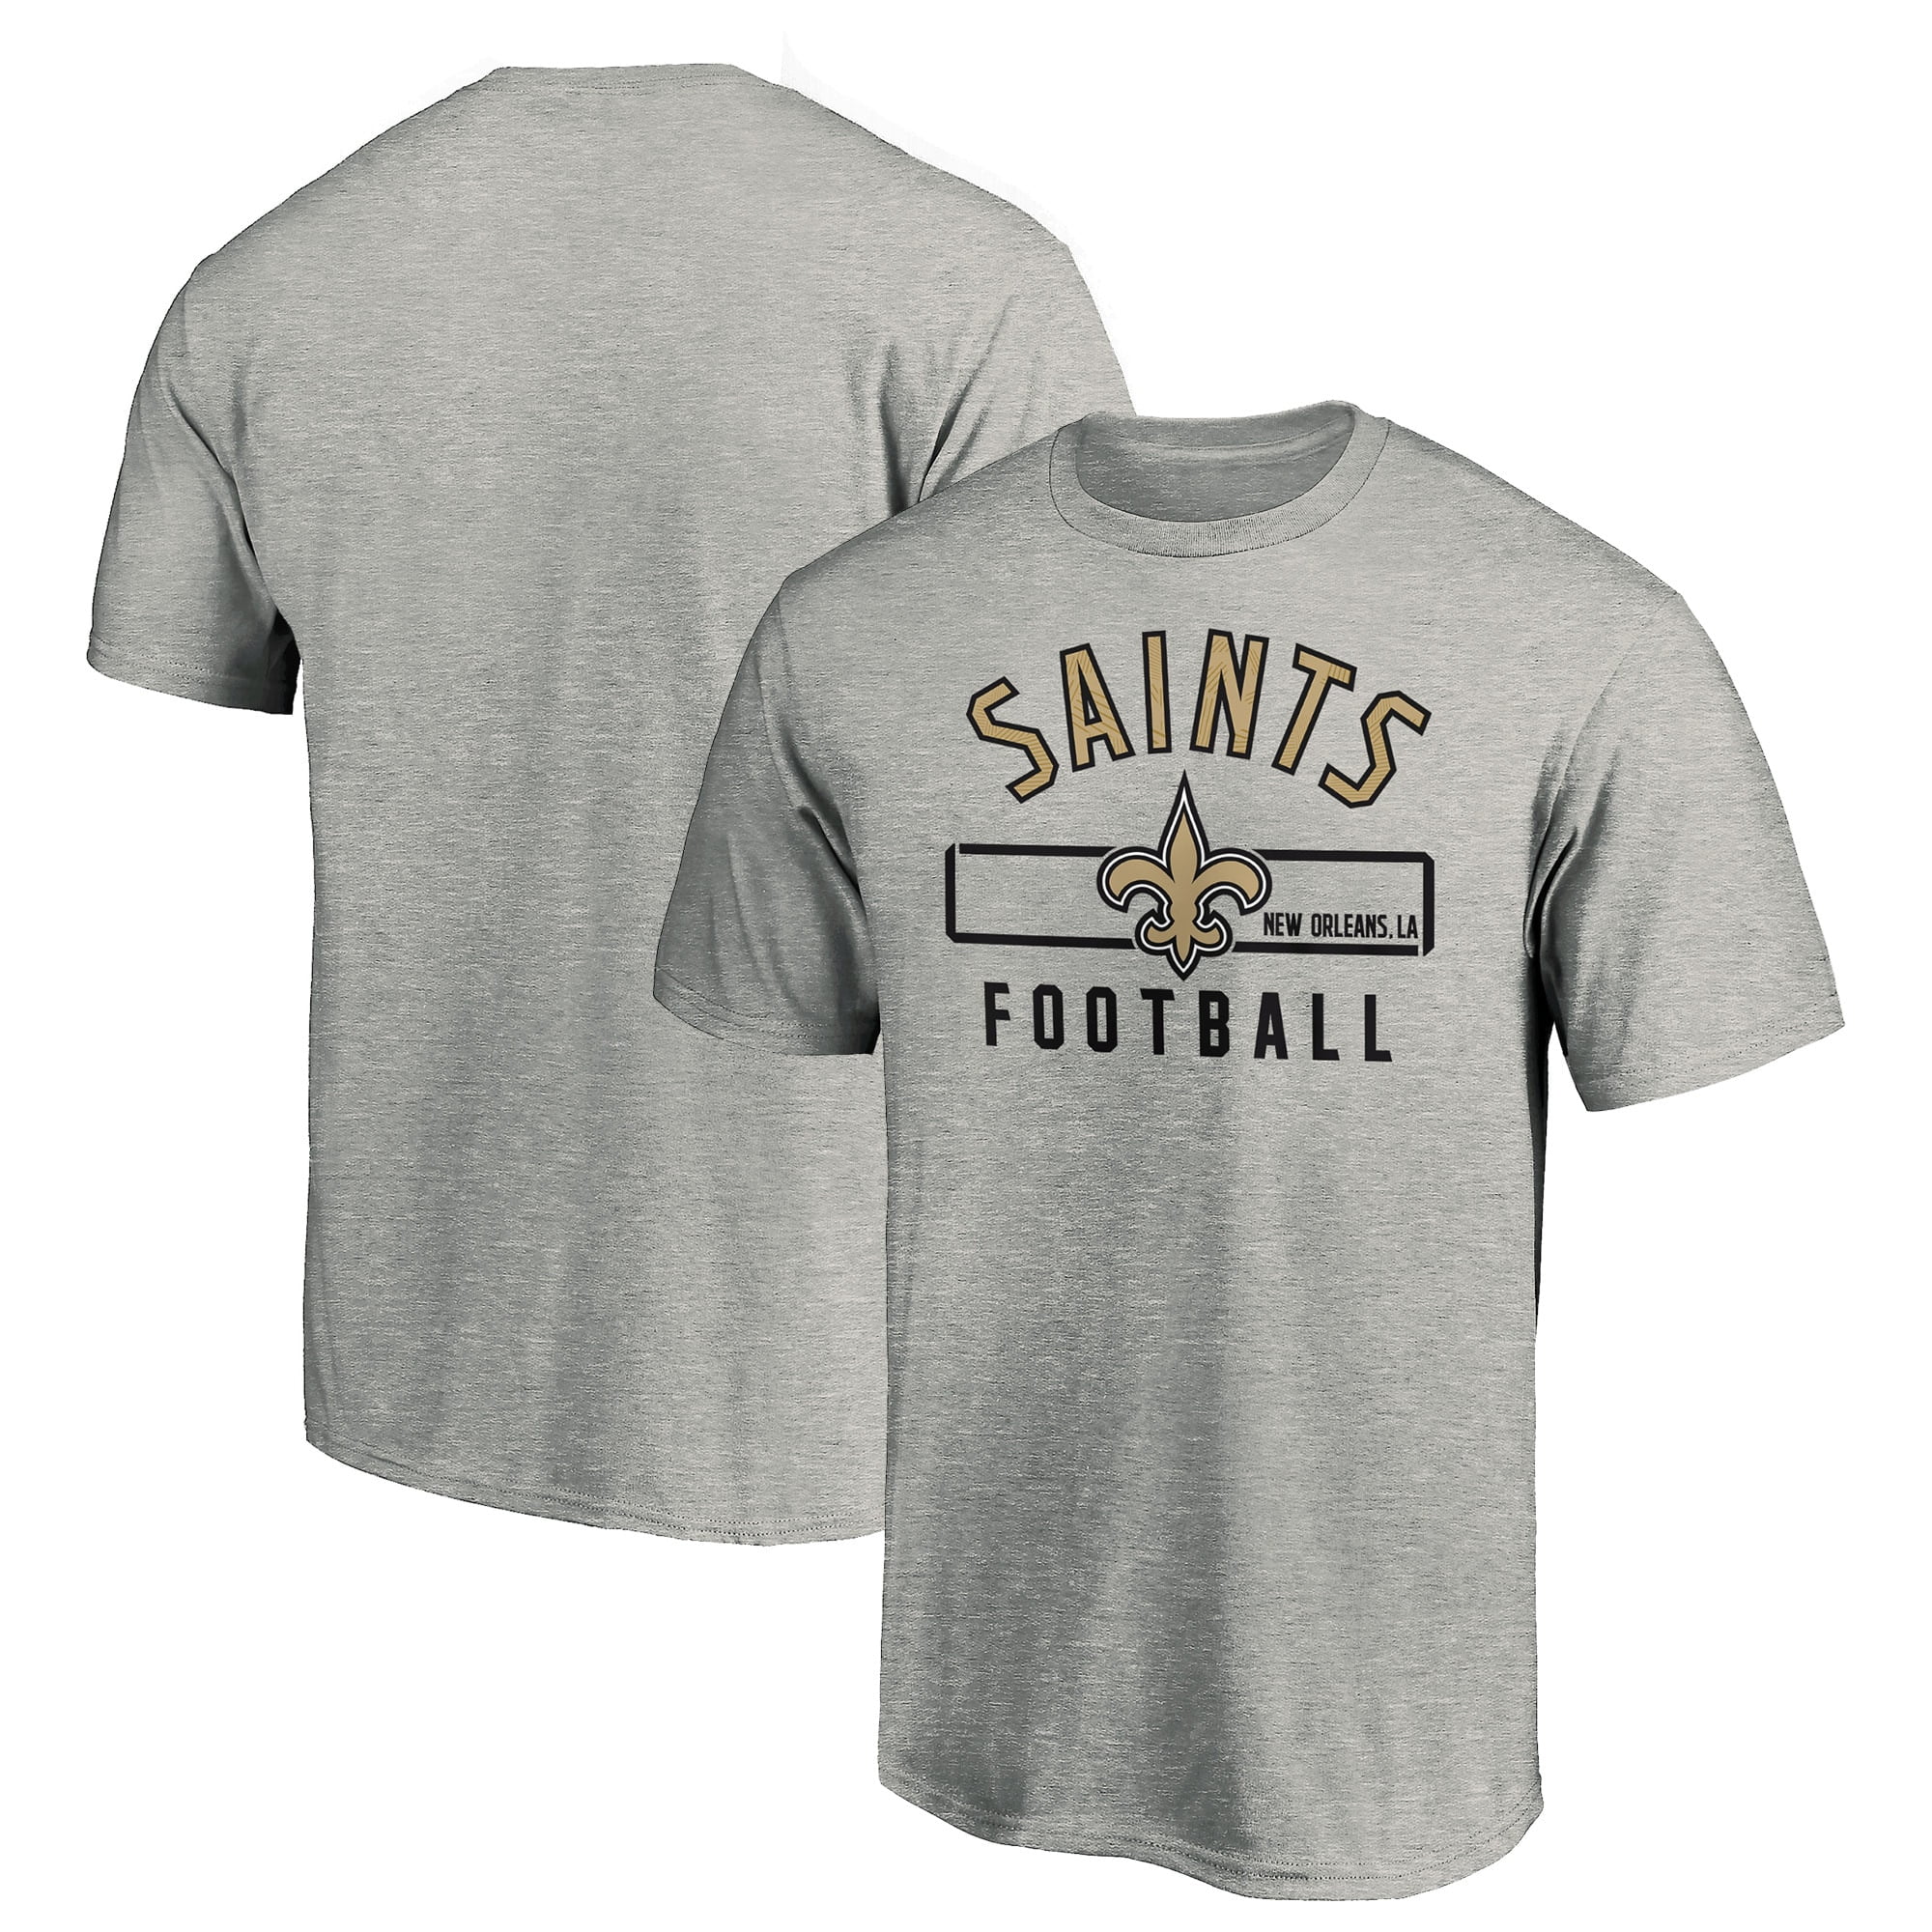 cool saints shirts